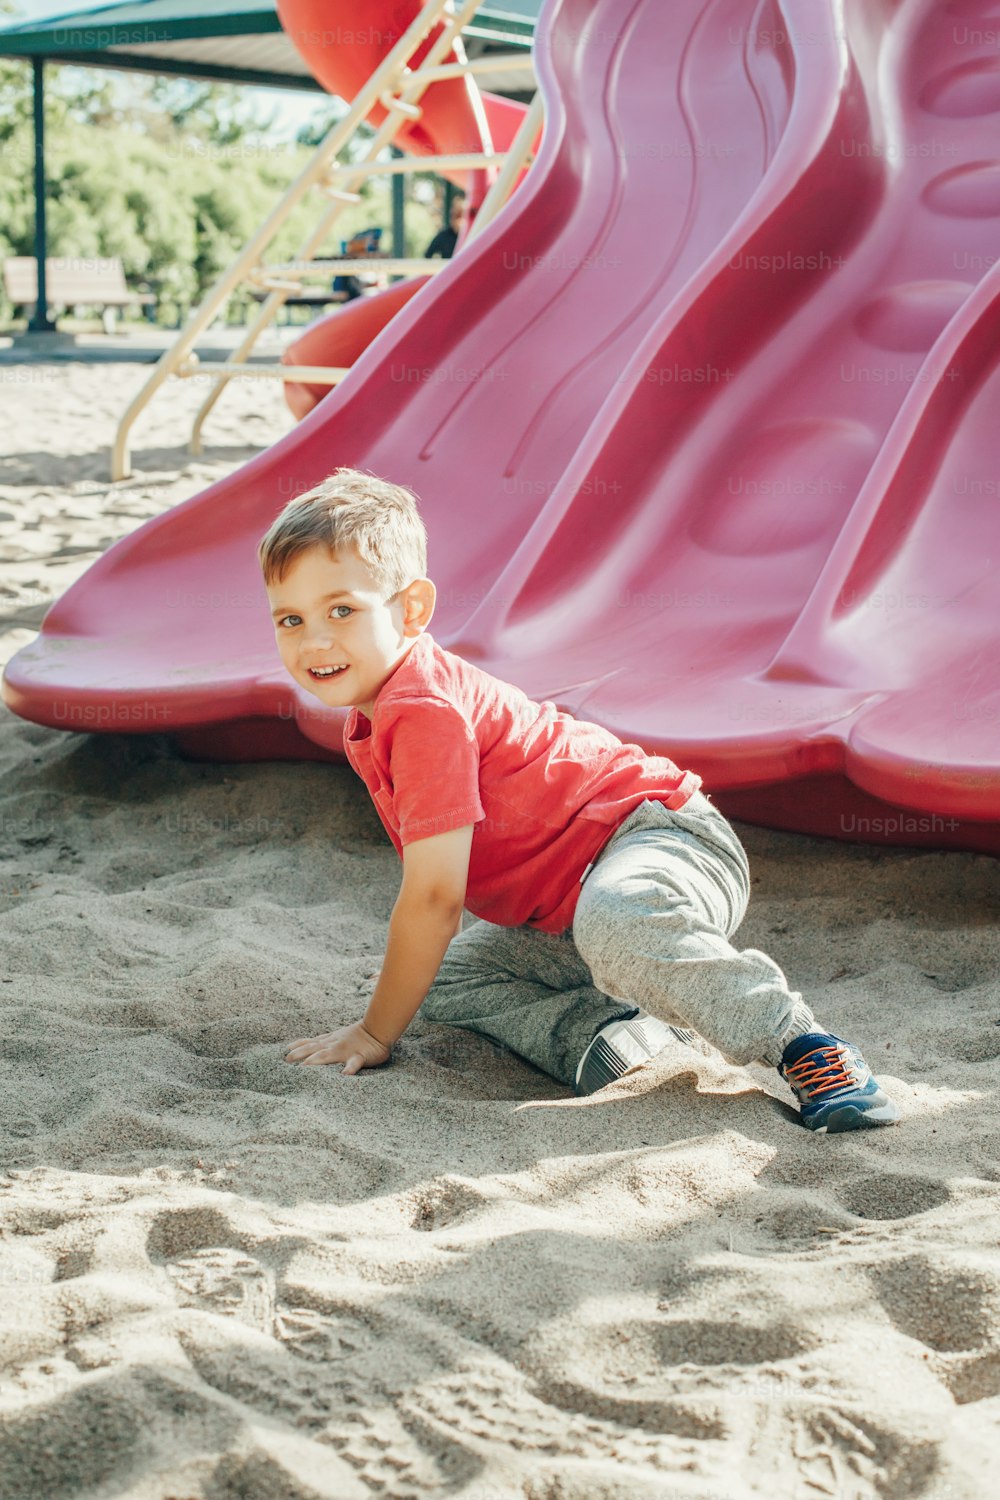 Aktiv glücklich lustig lächelnd kaukasischen Jungen Kind rutscht auf Spielplatz Schulhof im Freien am Sommer sonnigen Tag. Kind hat Spaß. Saisonale Kinderaktivität draußen. Authentisches Lifestyle-Konzept der Kindheit.